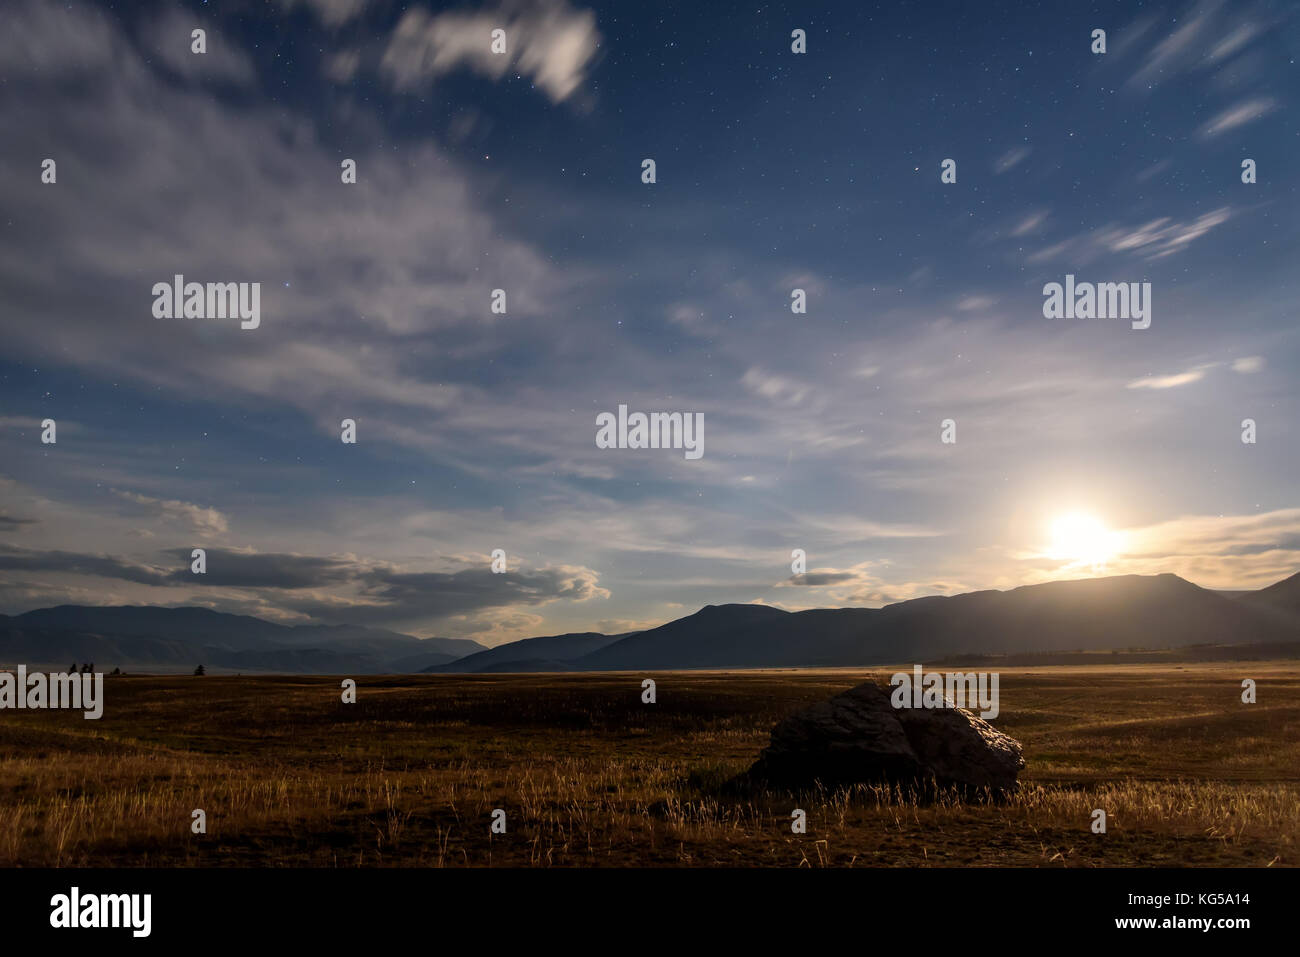 Beau paysage de nuit avec une grosse pierre dans la steppe, les phases, les étoiles et les nuages dans le ciel de nuit contre l'arrière-plan des montagnes Banque D'Images